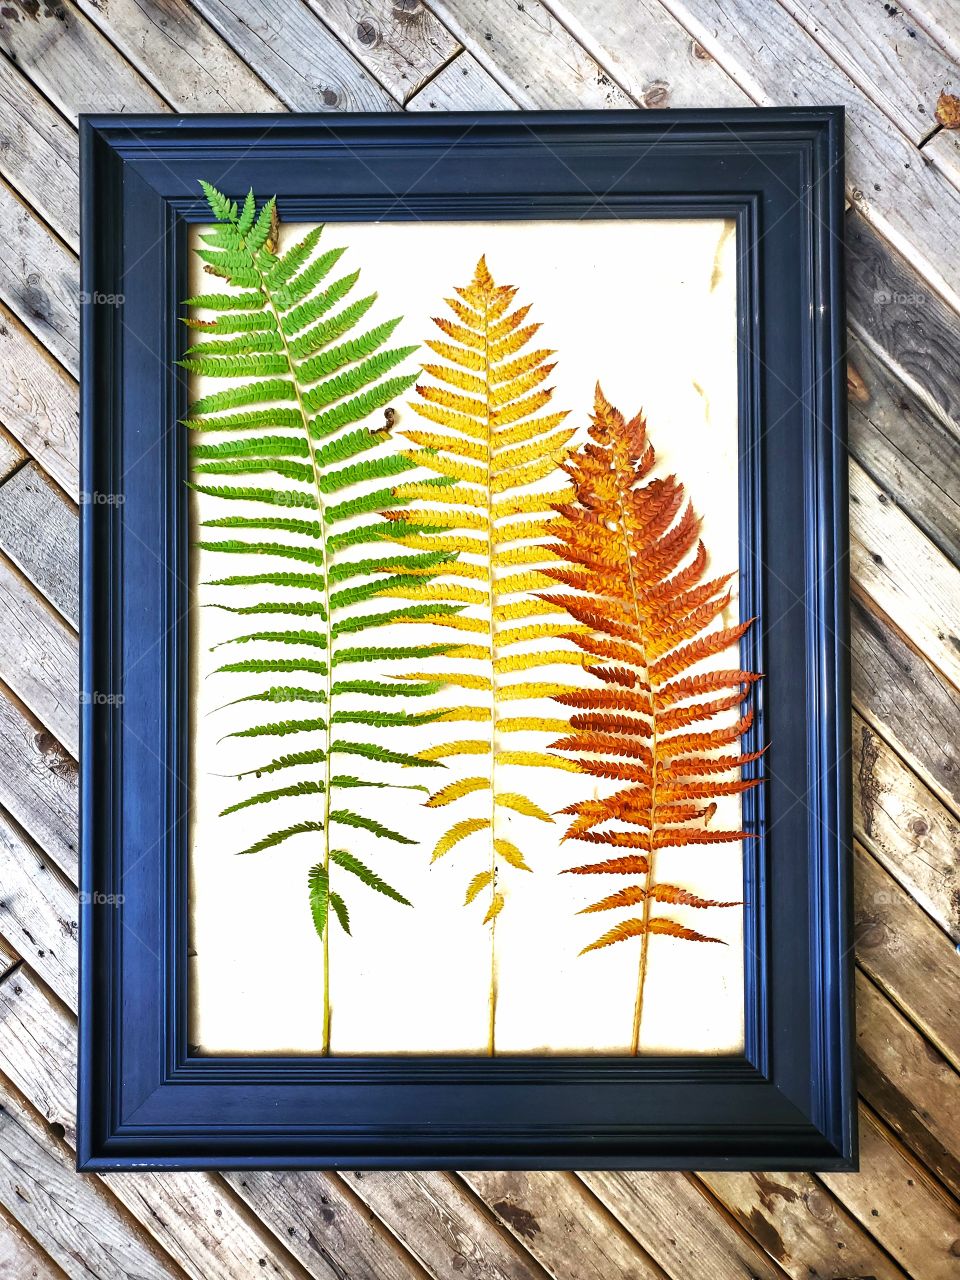 Portrait of a plant:
Colours of ferns.